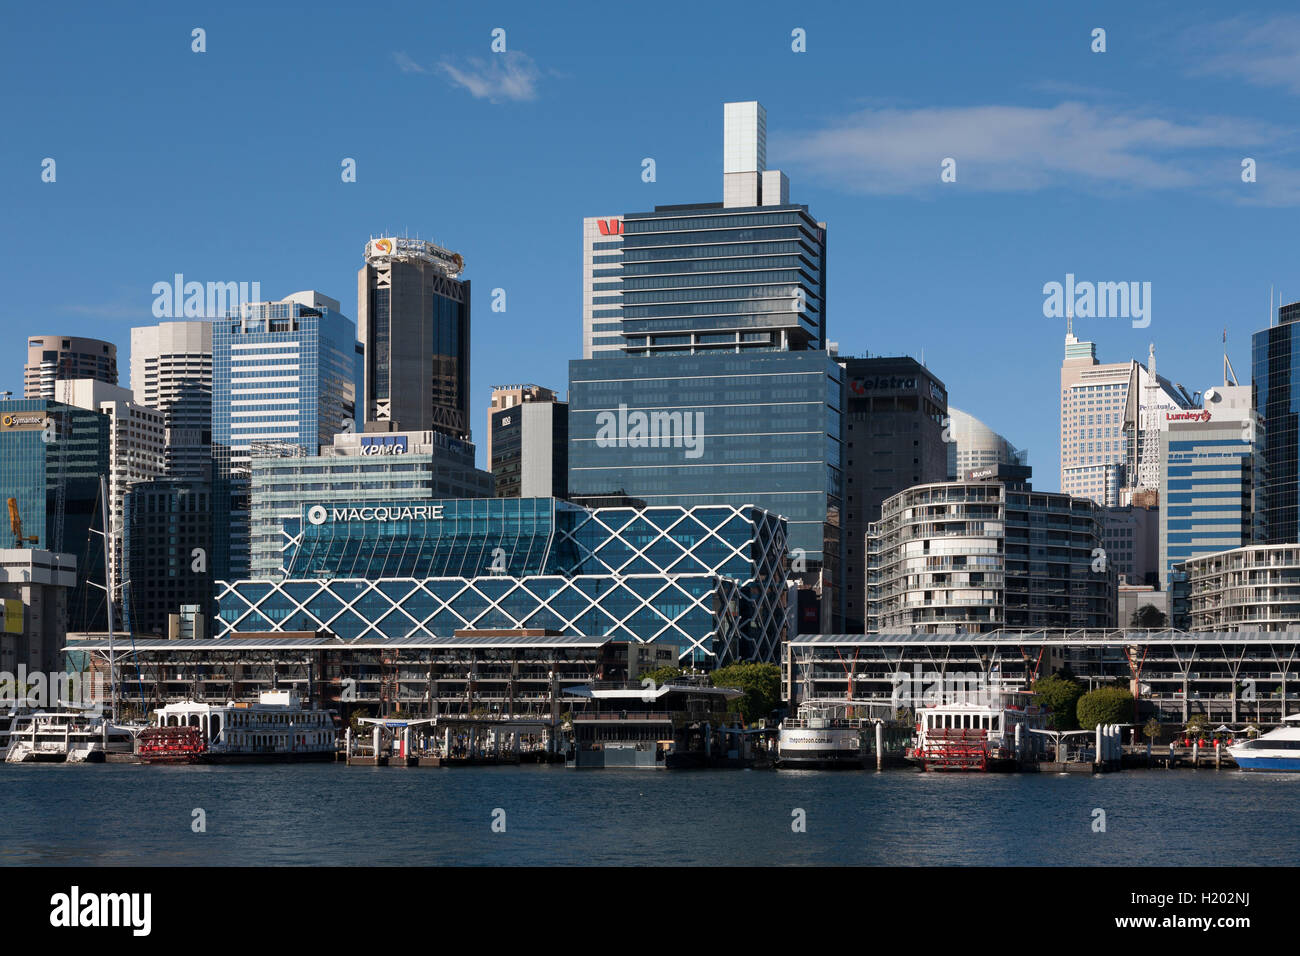 Kings wharf an einem schönen sonnigen Tag mit der Macquarie Bank Hauptsitz-Darling Harbour Sydney Australien Stockfoto